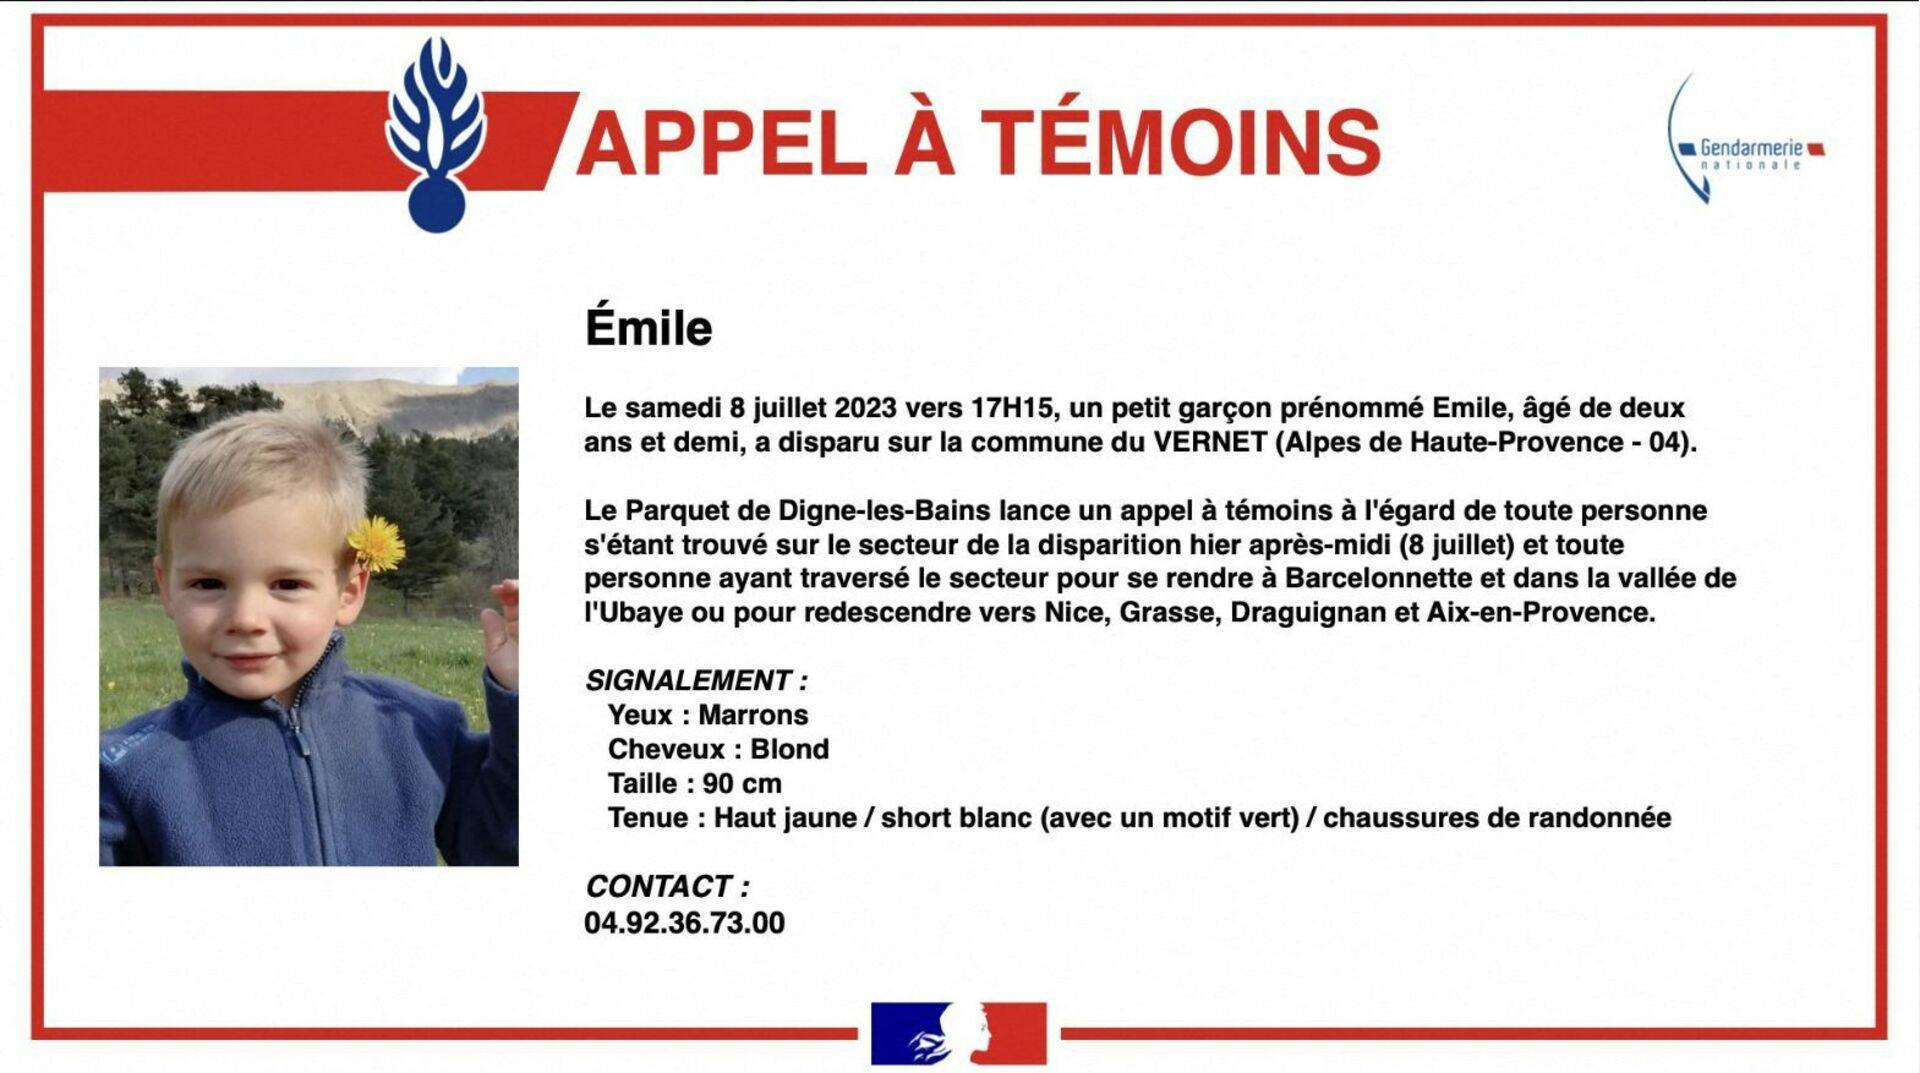 Emile fra frankrig er forsvundet